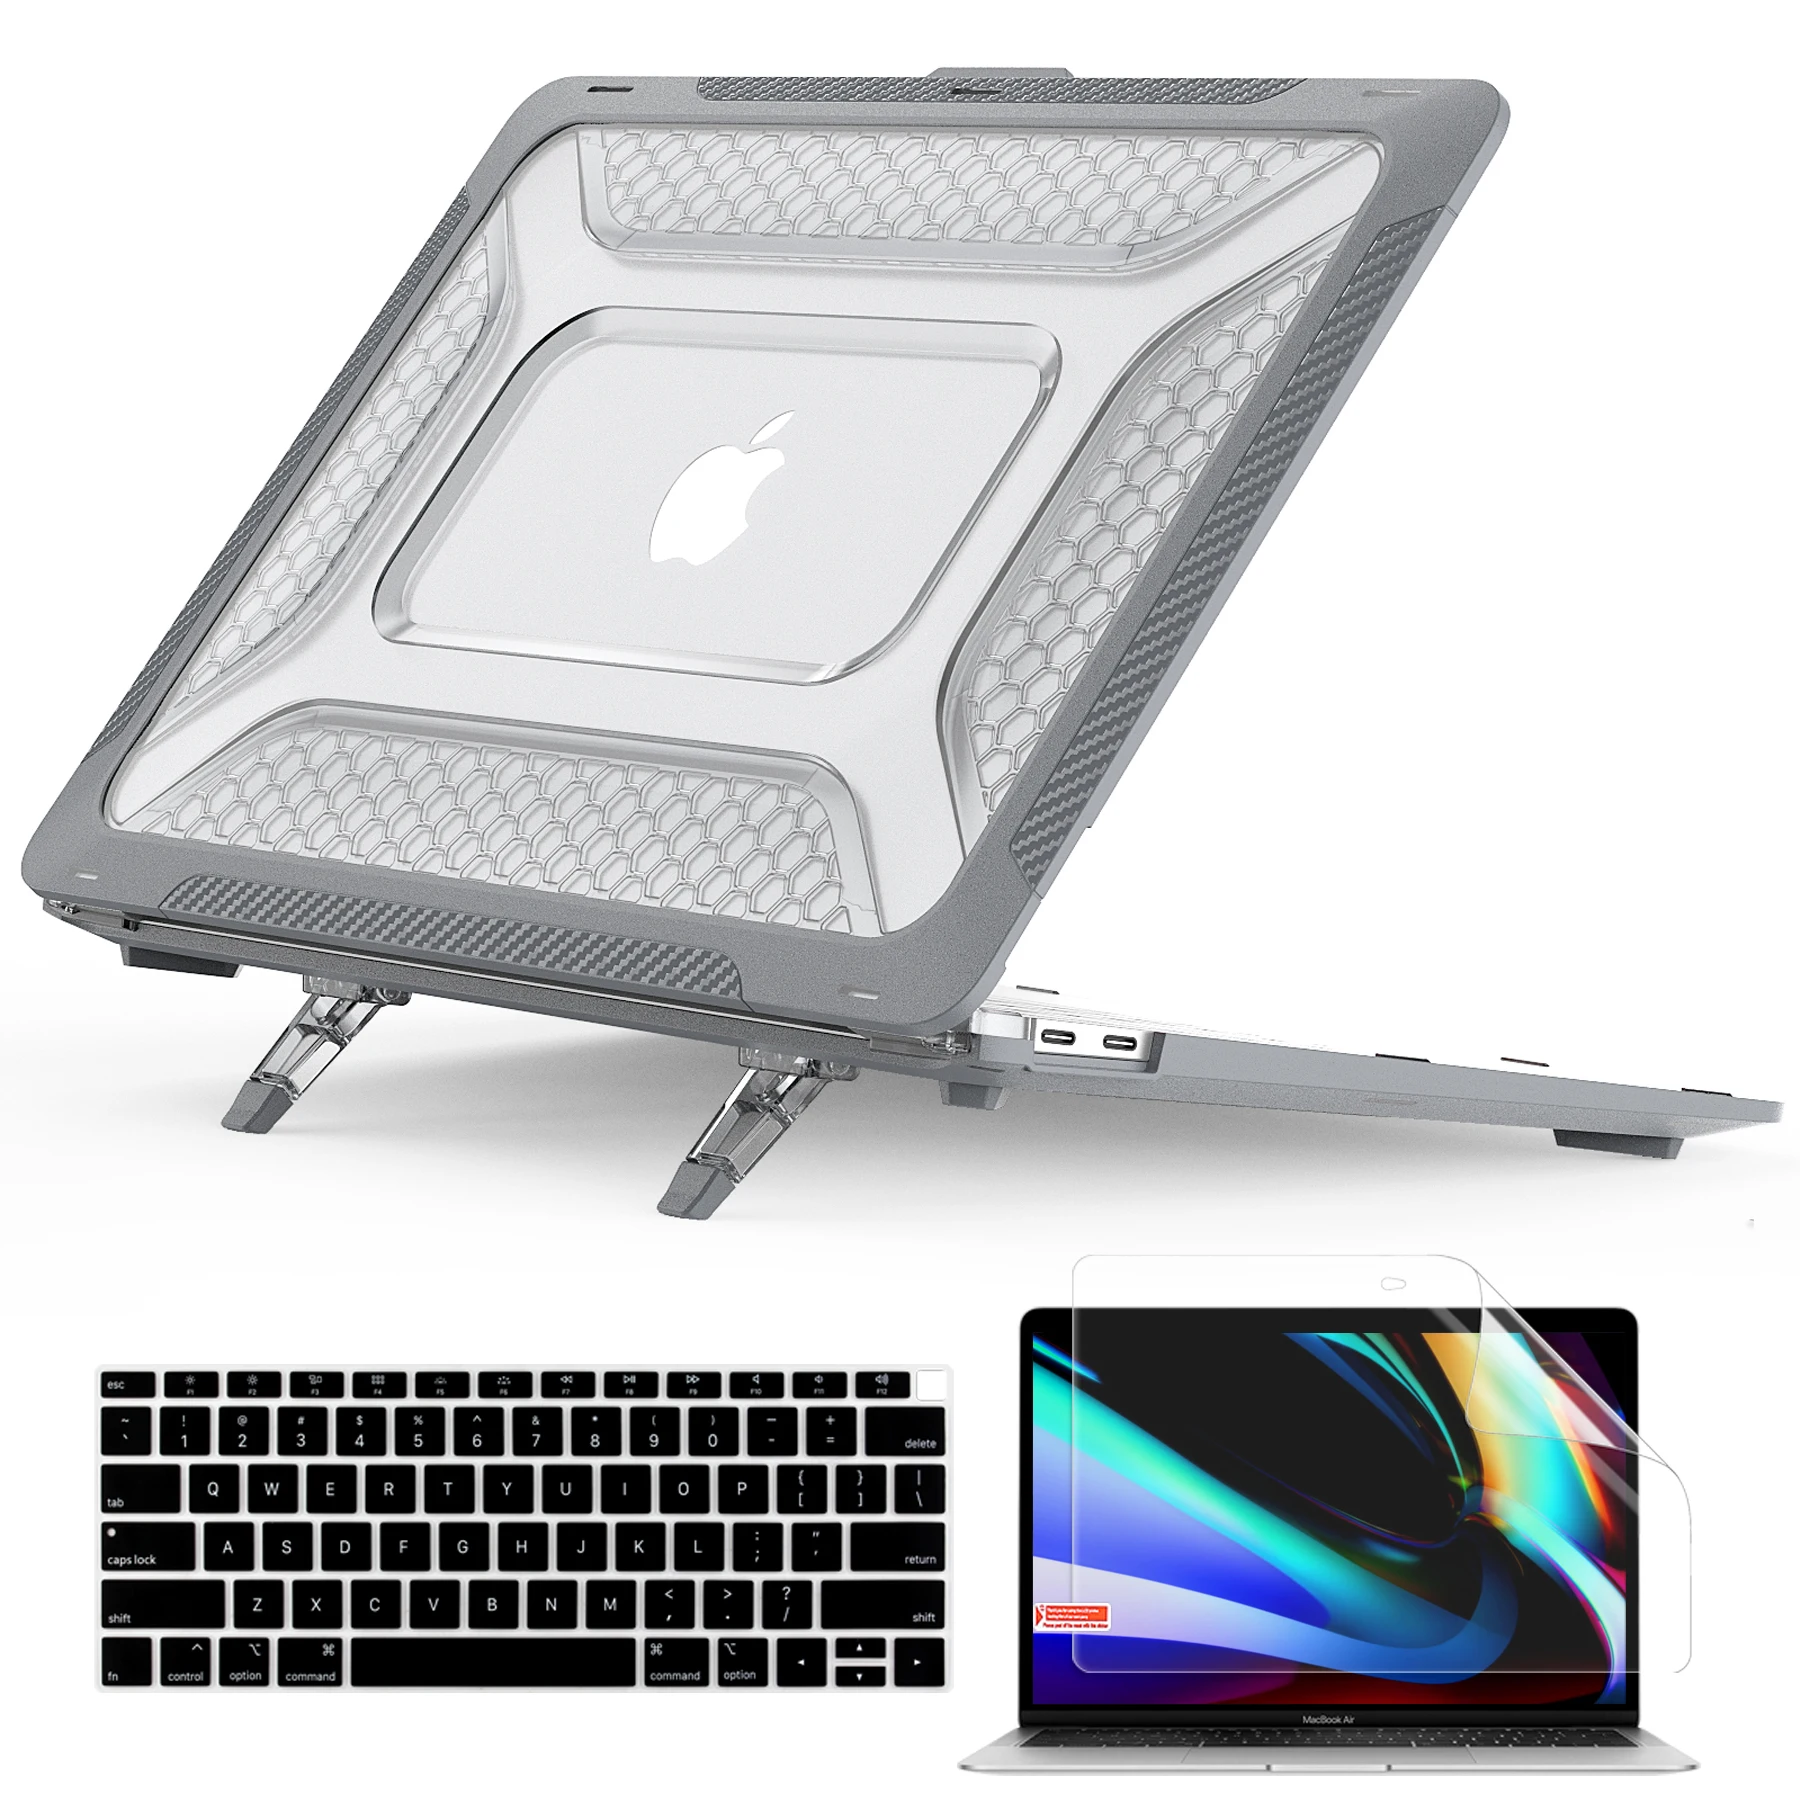 

Ударопрочный сверхпрочный защитный чехол 3 в 1 для 2020 MacBook Air M1 A2337 A2179 A1932 2019 дюйма складной чехол с подставкой и пленкой для клавиатуры